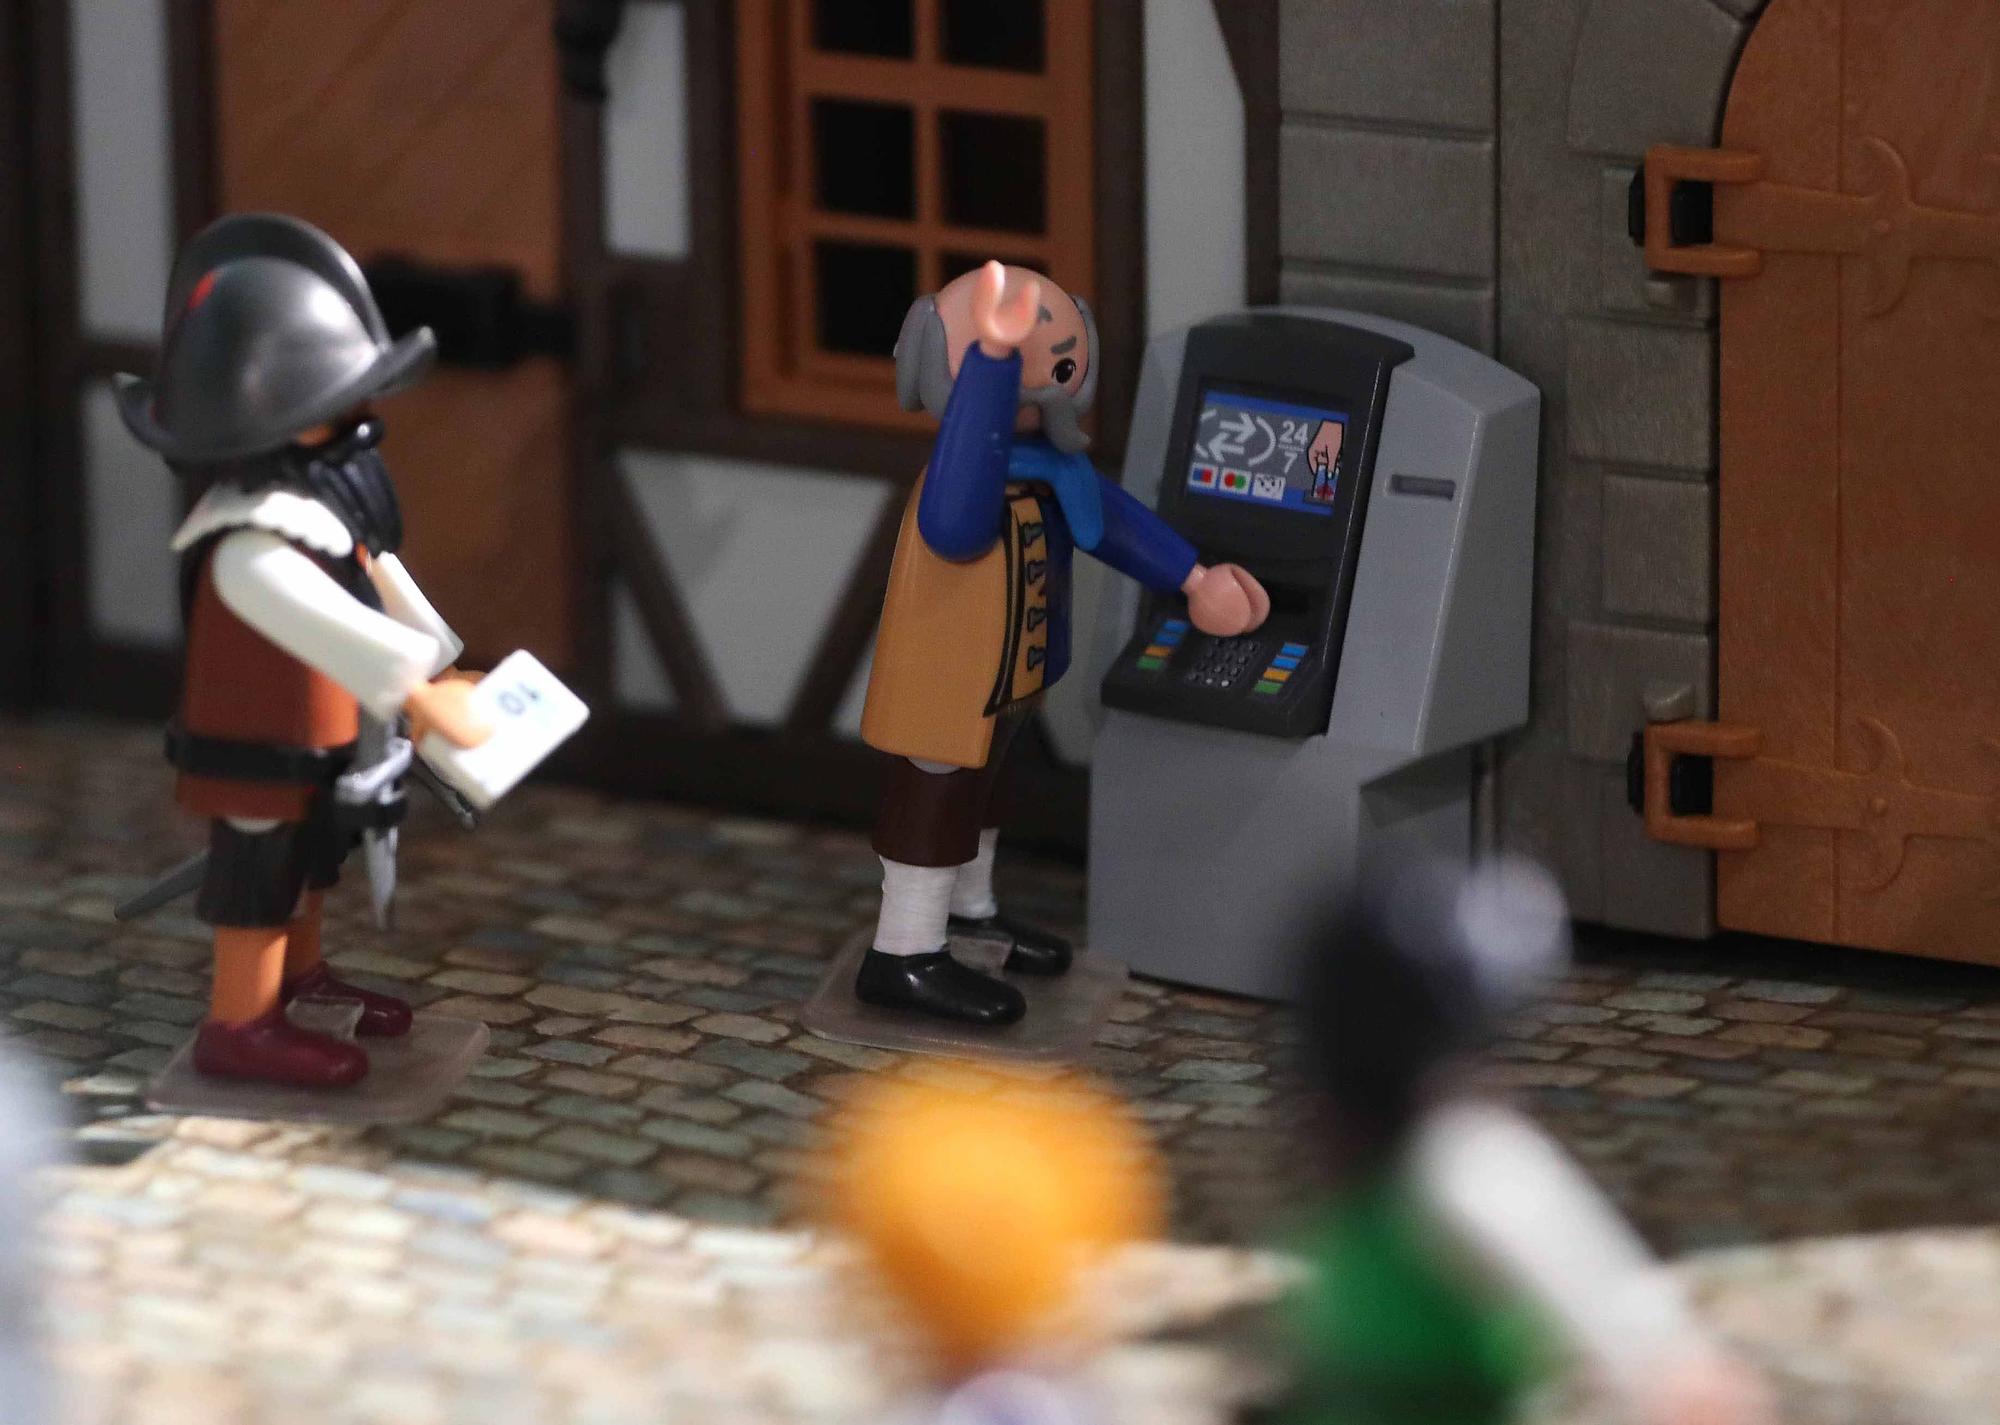 Exposición "El juego de la Historia" con figuras de Playmobil